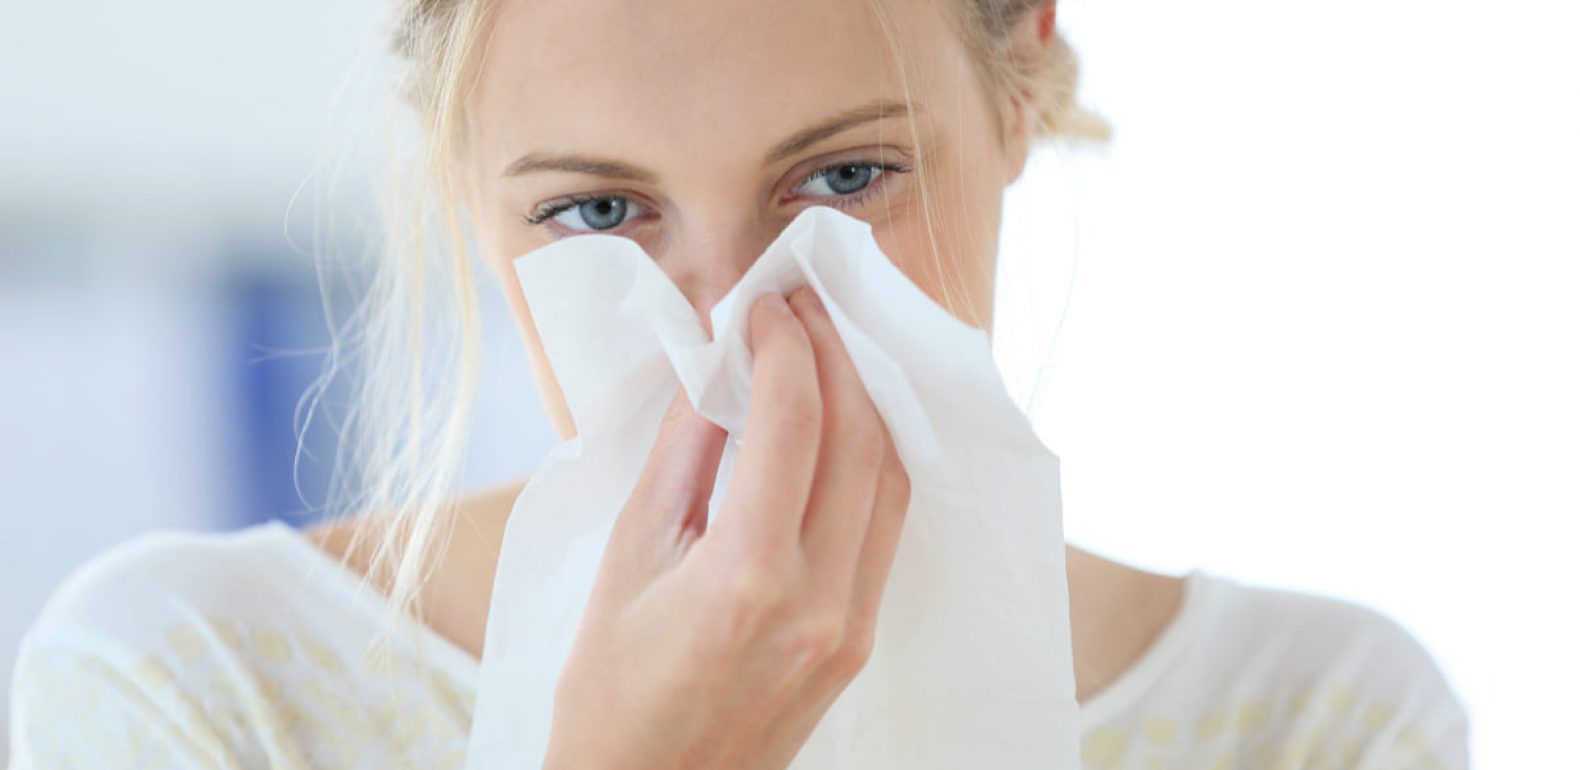 Apprendre à reconnaitre les symptômes de la grippe